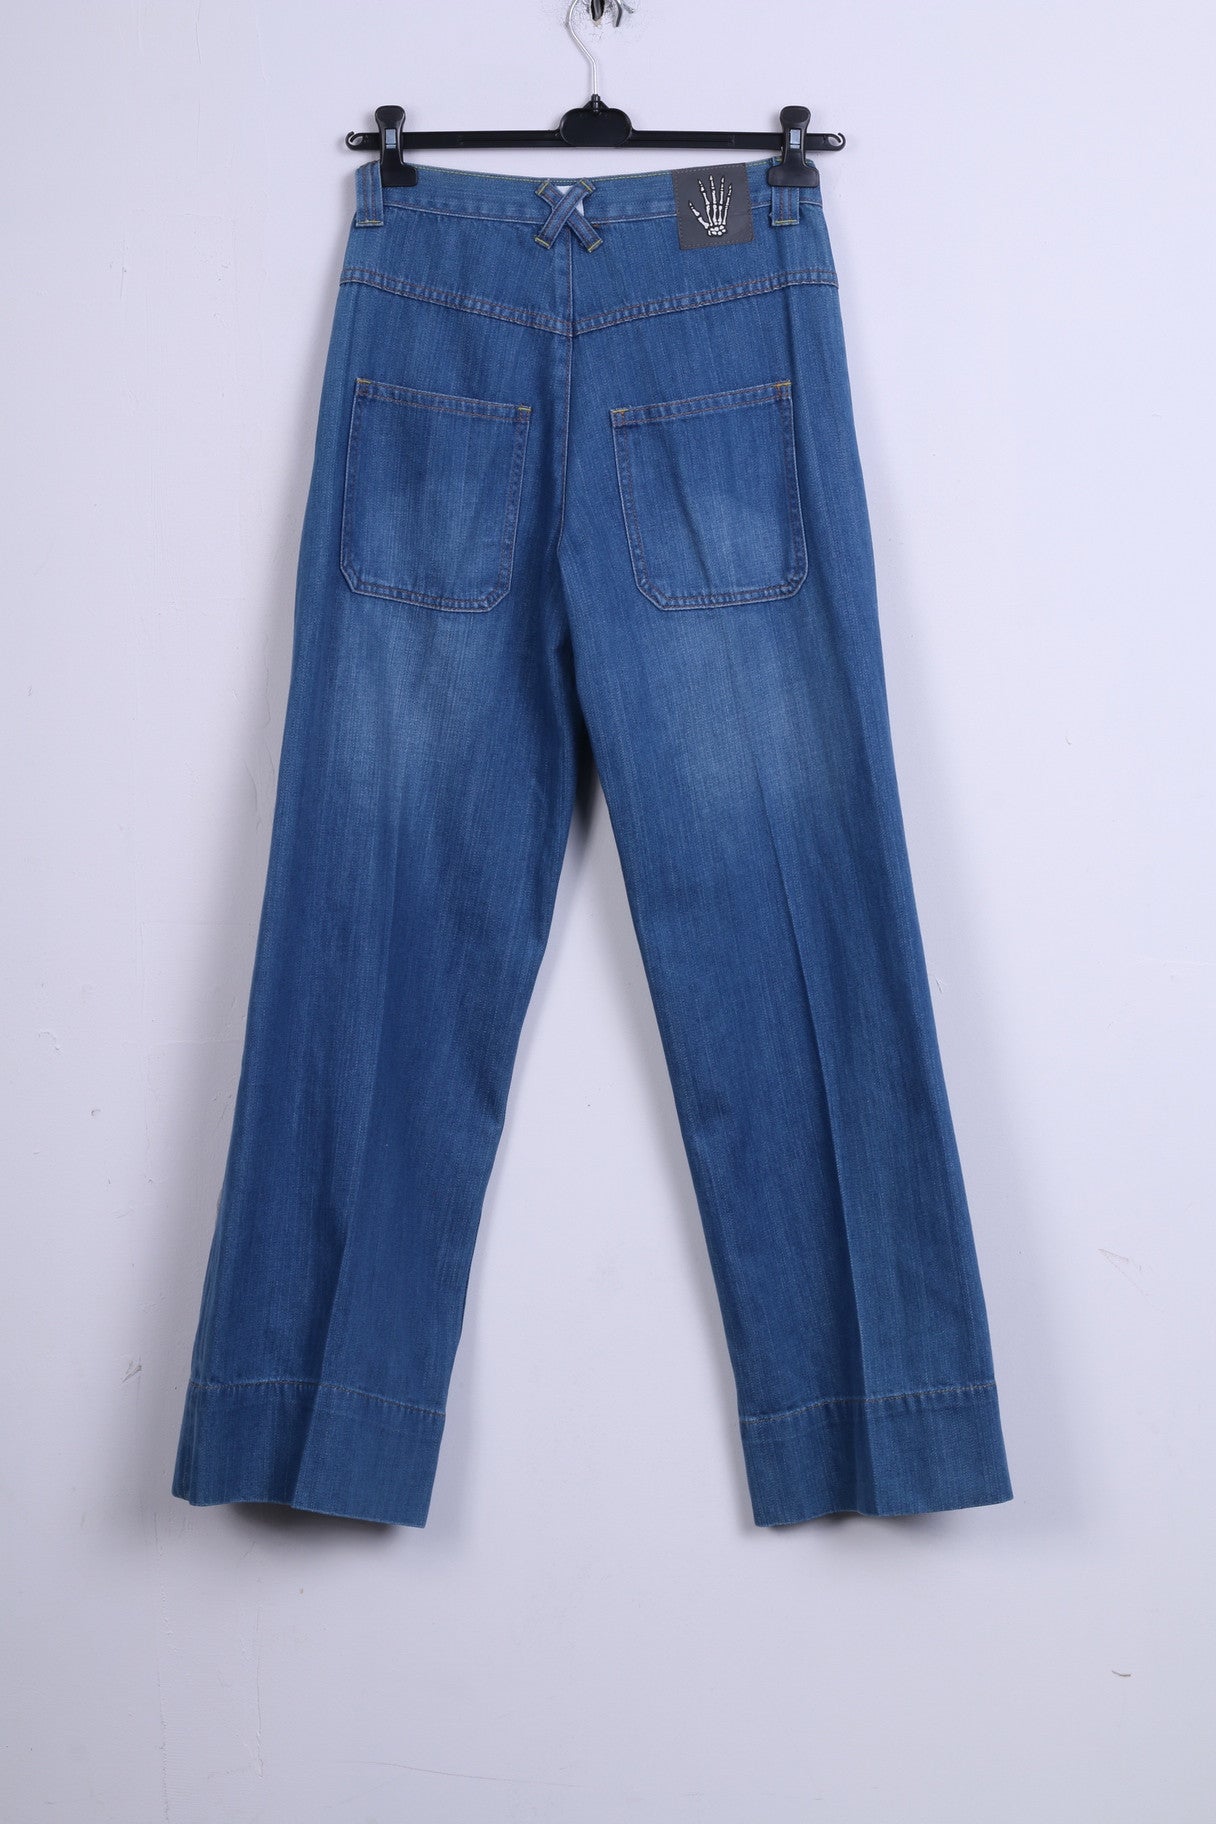 Cheap Monday Womens W29 L32 Trousers Denim Jeans Blue Cotton Wide Pants